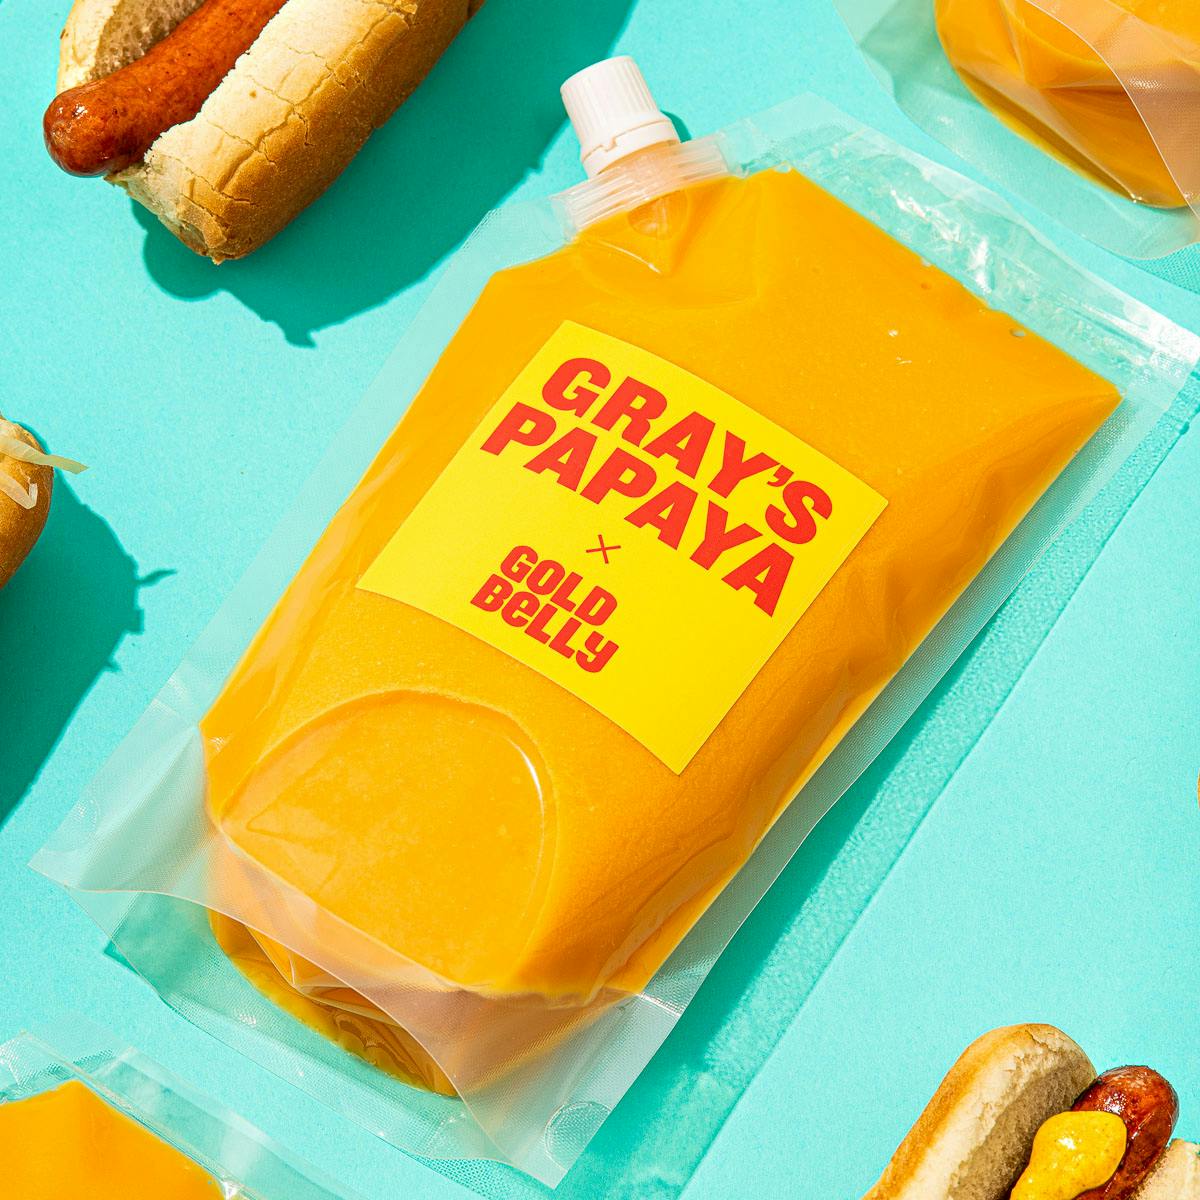 Gray's Papaya – O melhor cachorro-quente de New York - Cantinho de Ná